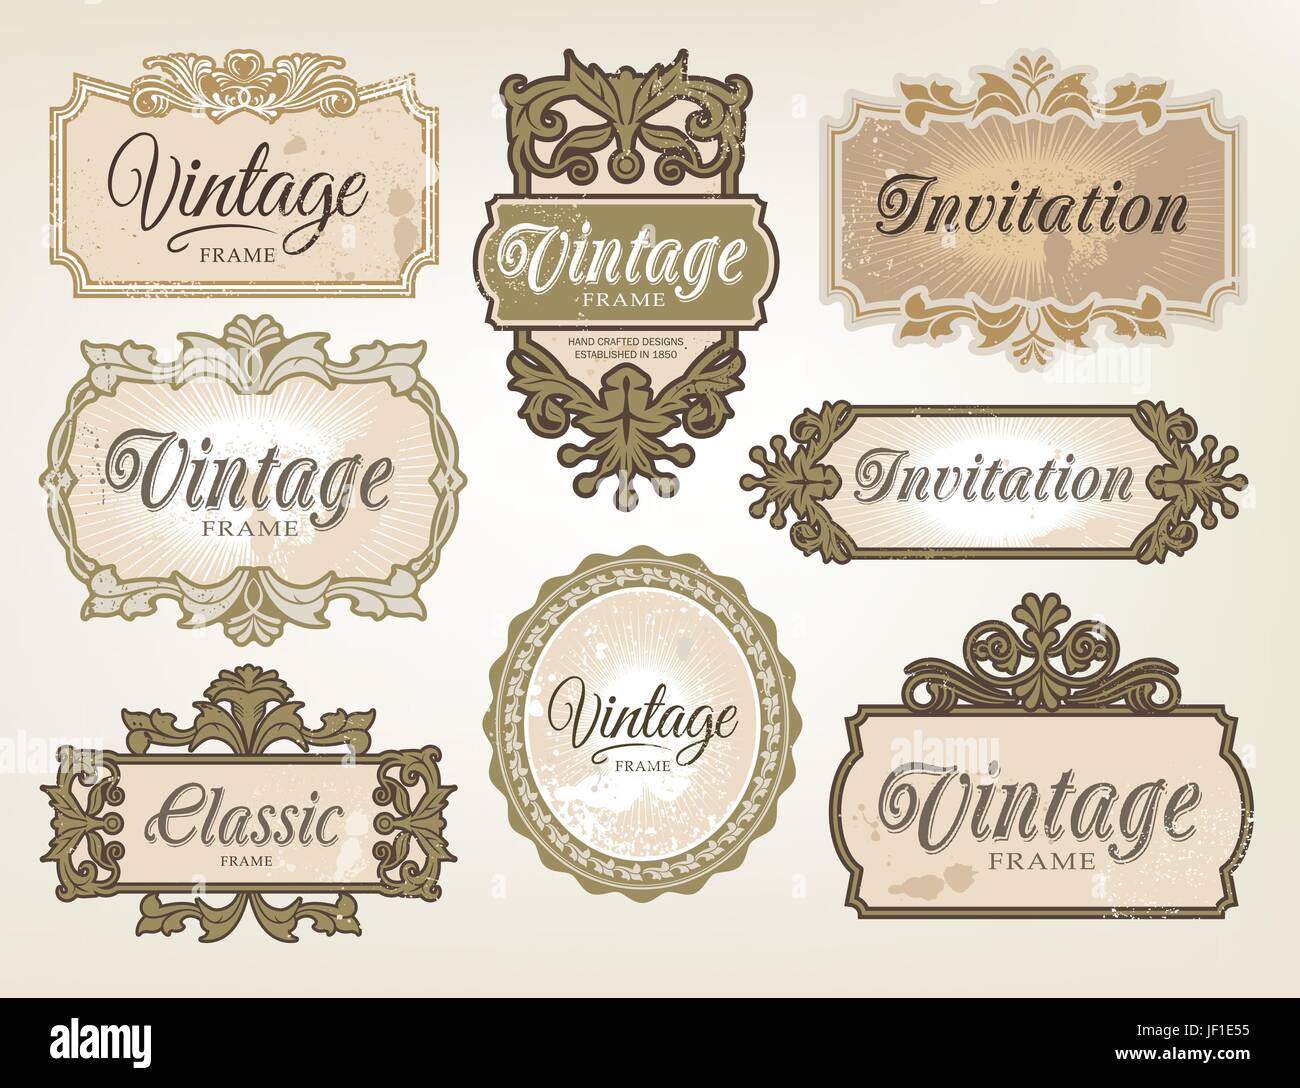 vintage, decoration, retro, label, sign, vector, frame, framework, design, Stock Vector